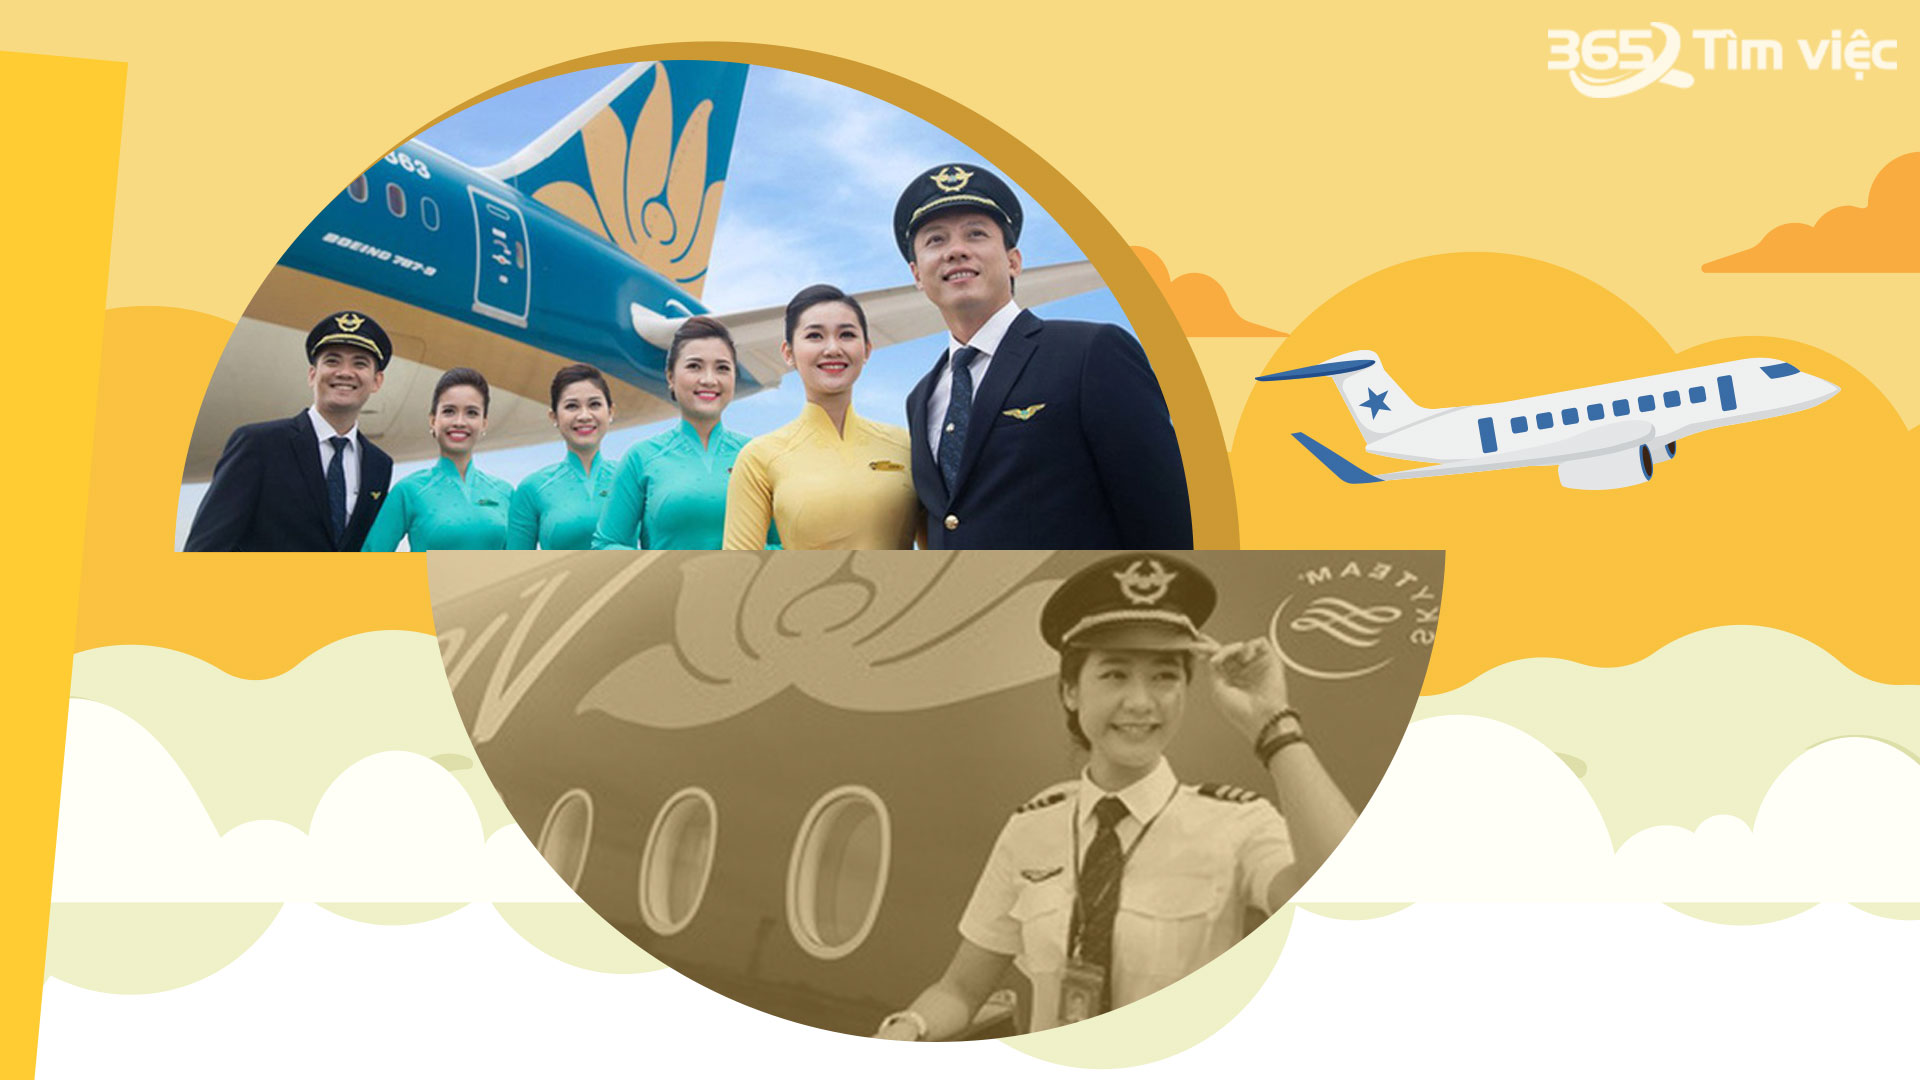 Tìm hiểu về ngọn ngành của hàng không tại Việt Nam